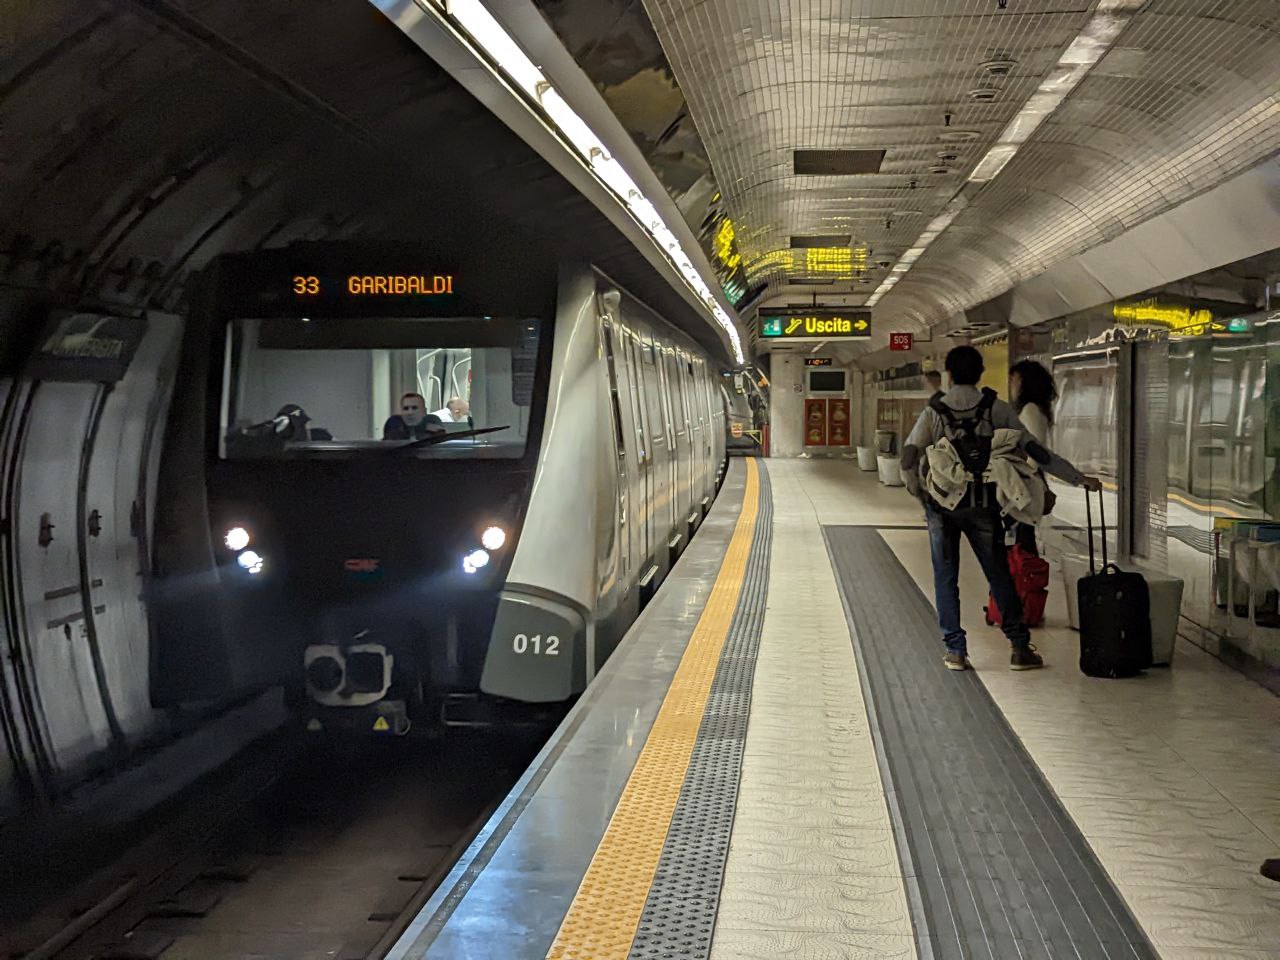 ナポリ地下鉄1号線の新幹線が駅に停車